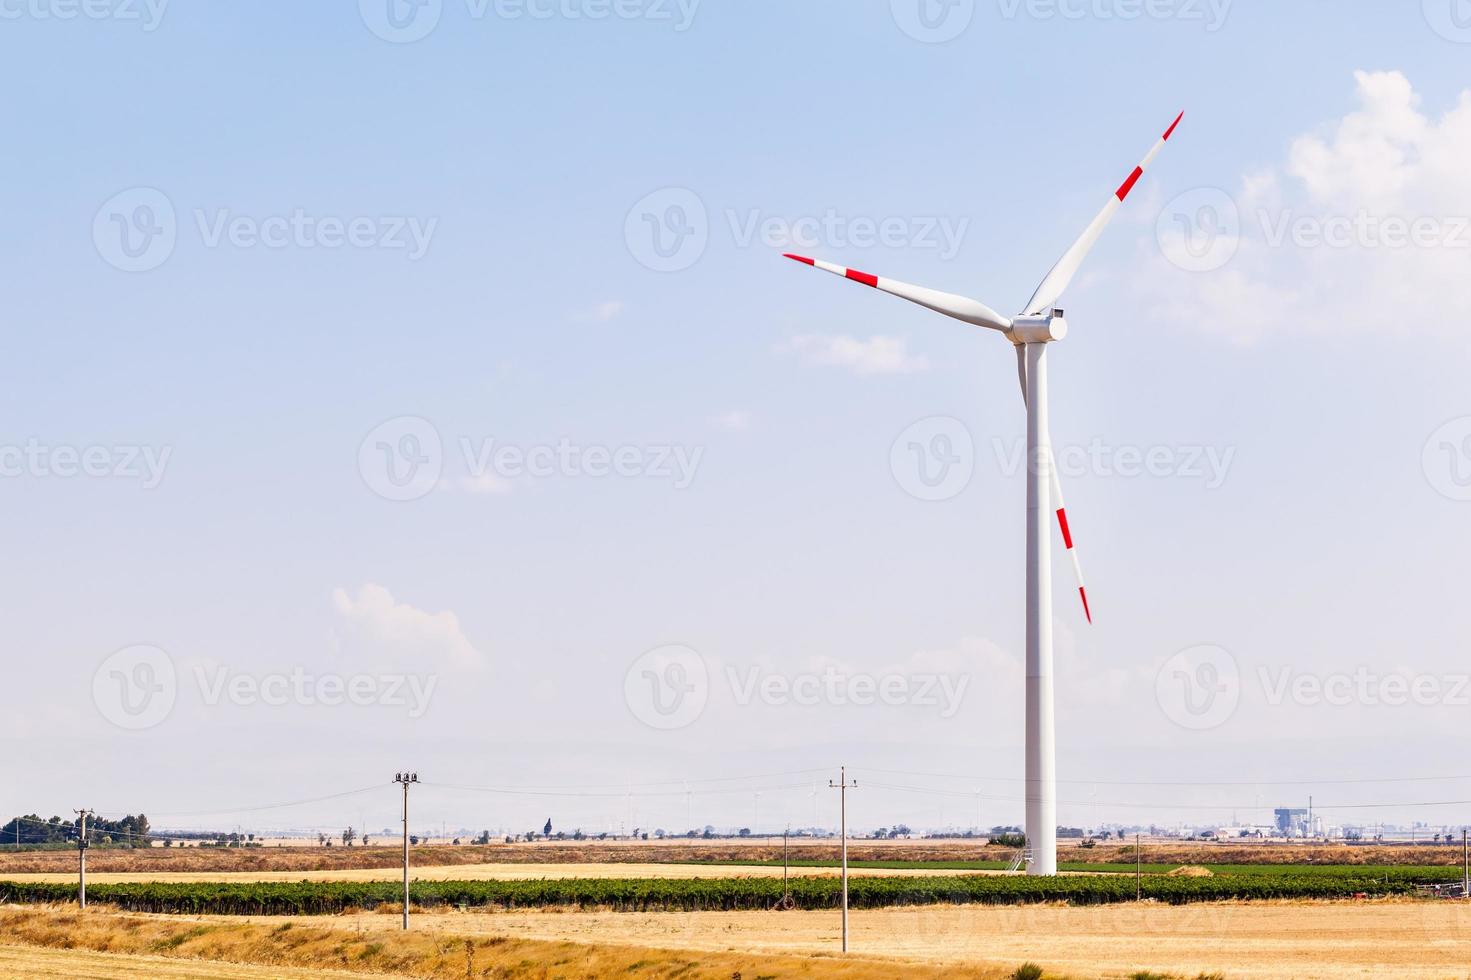 windturbine foto